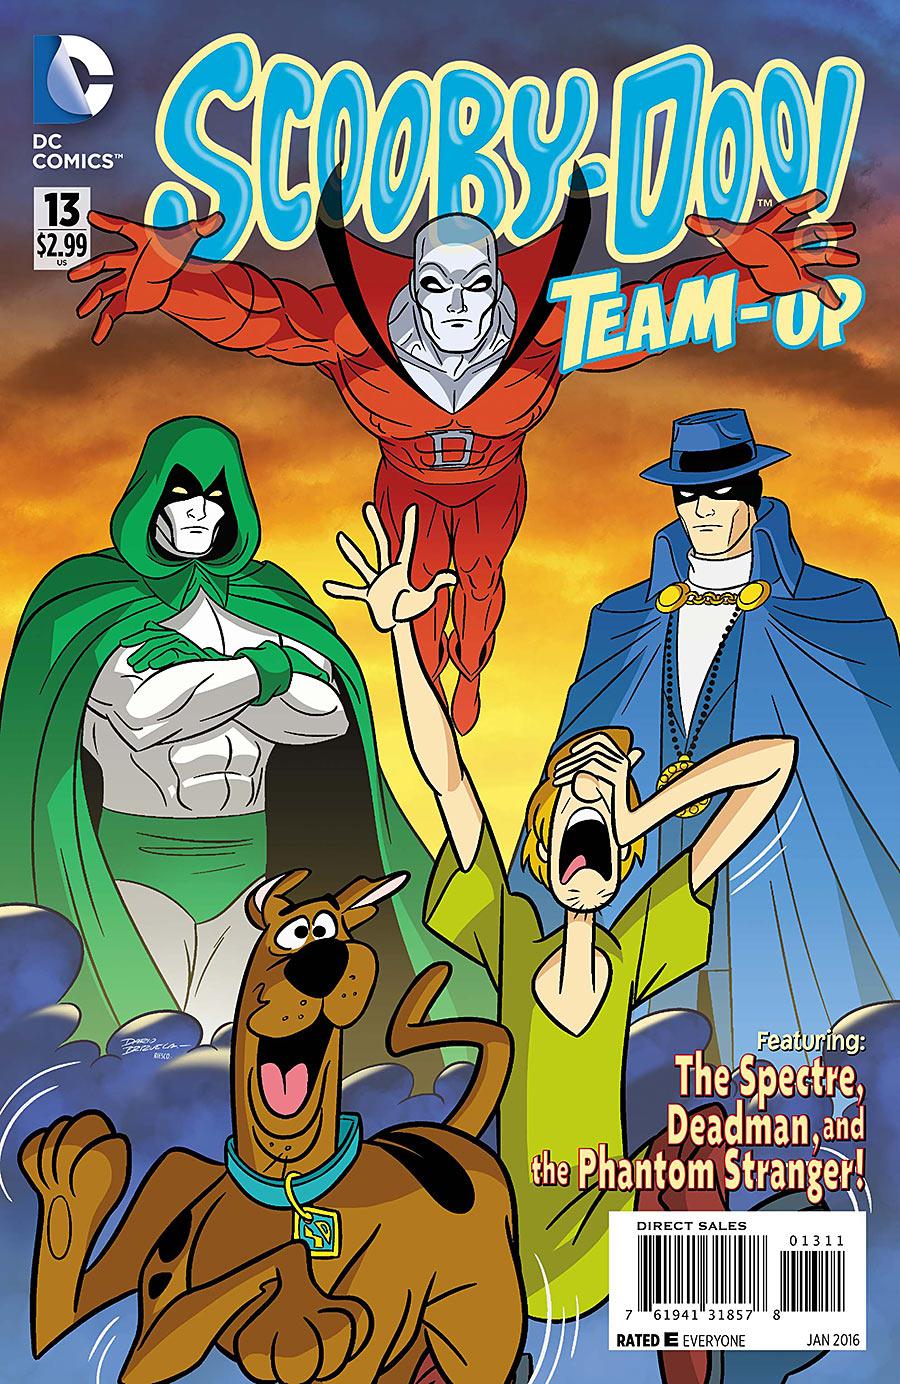 Scooby-Doo Team-Up Vol. 1 #13